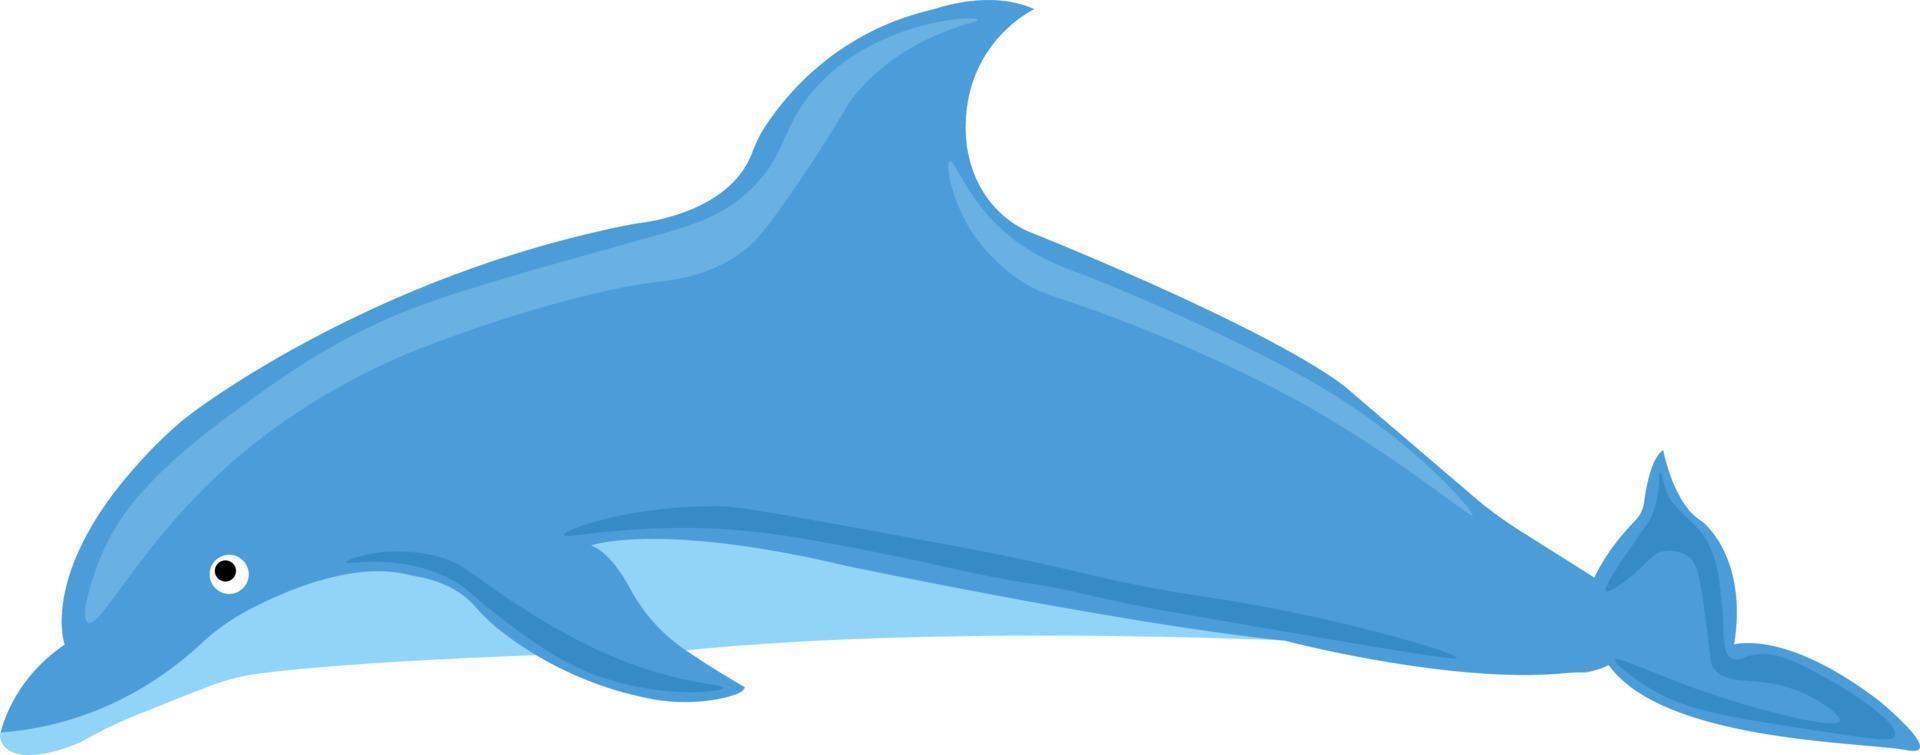 Blauer Delfin, Illustration, Vektor auf weißem Hintergrund.